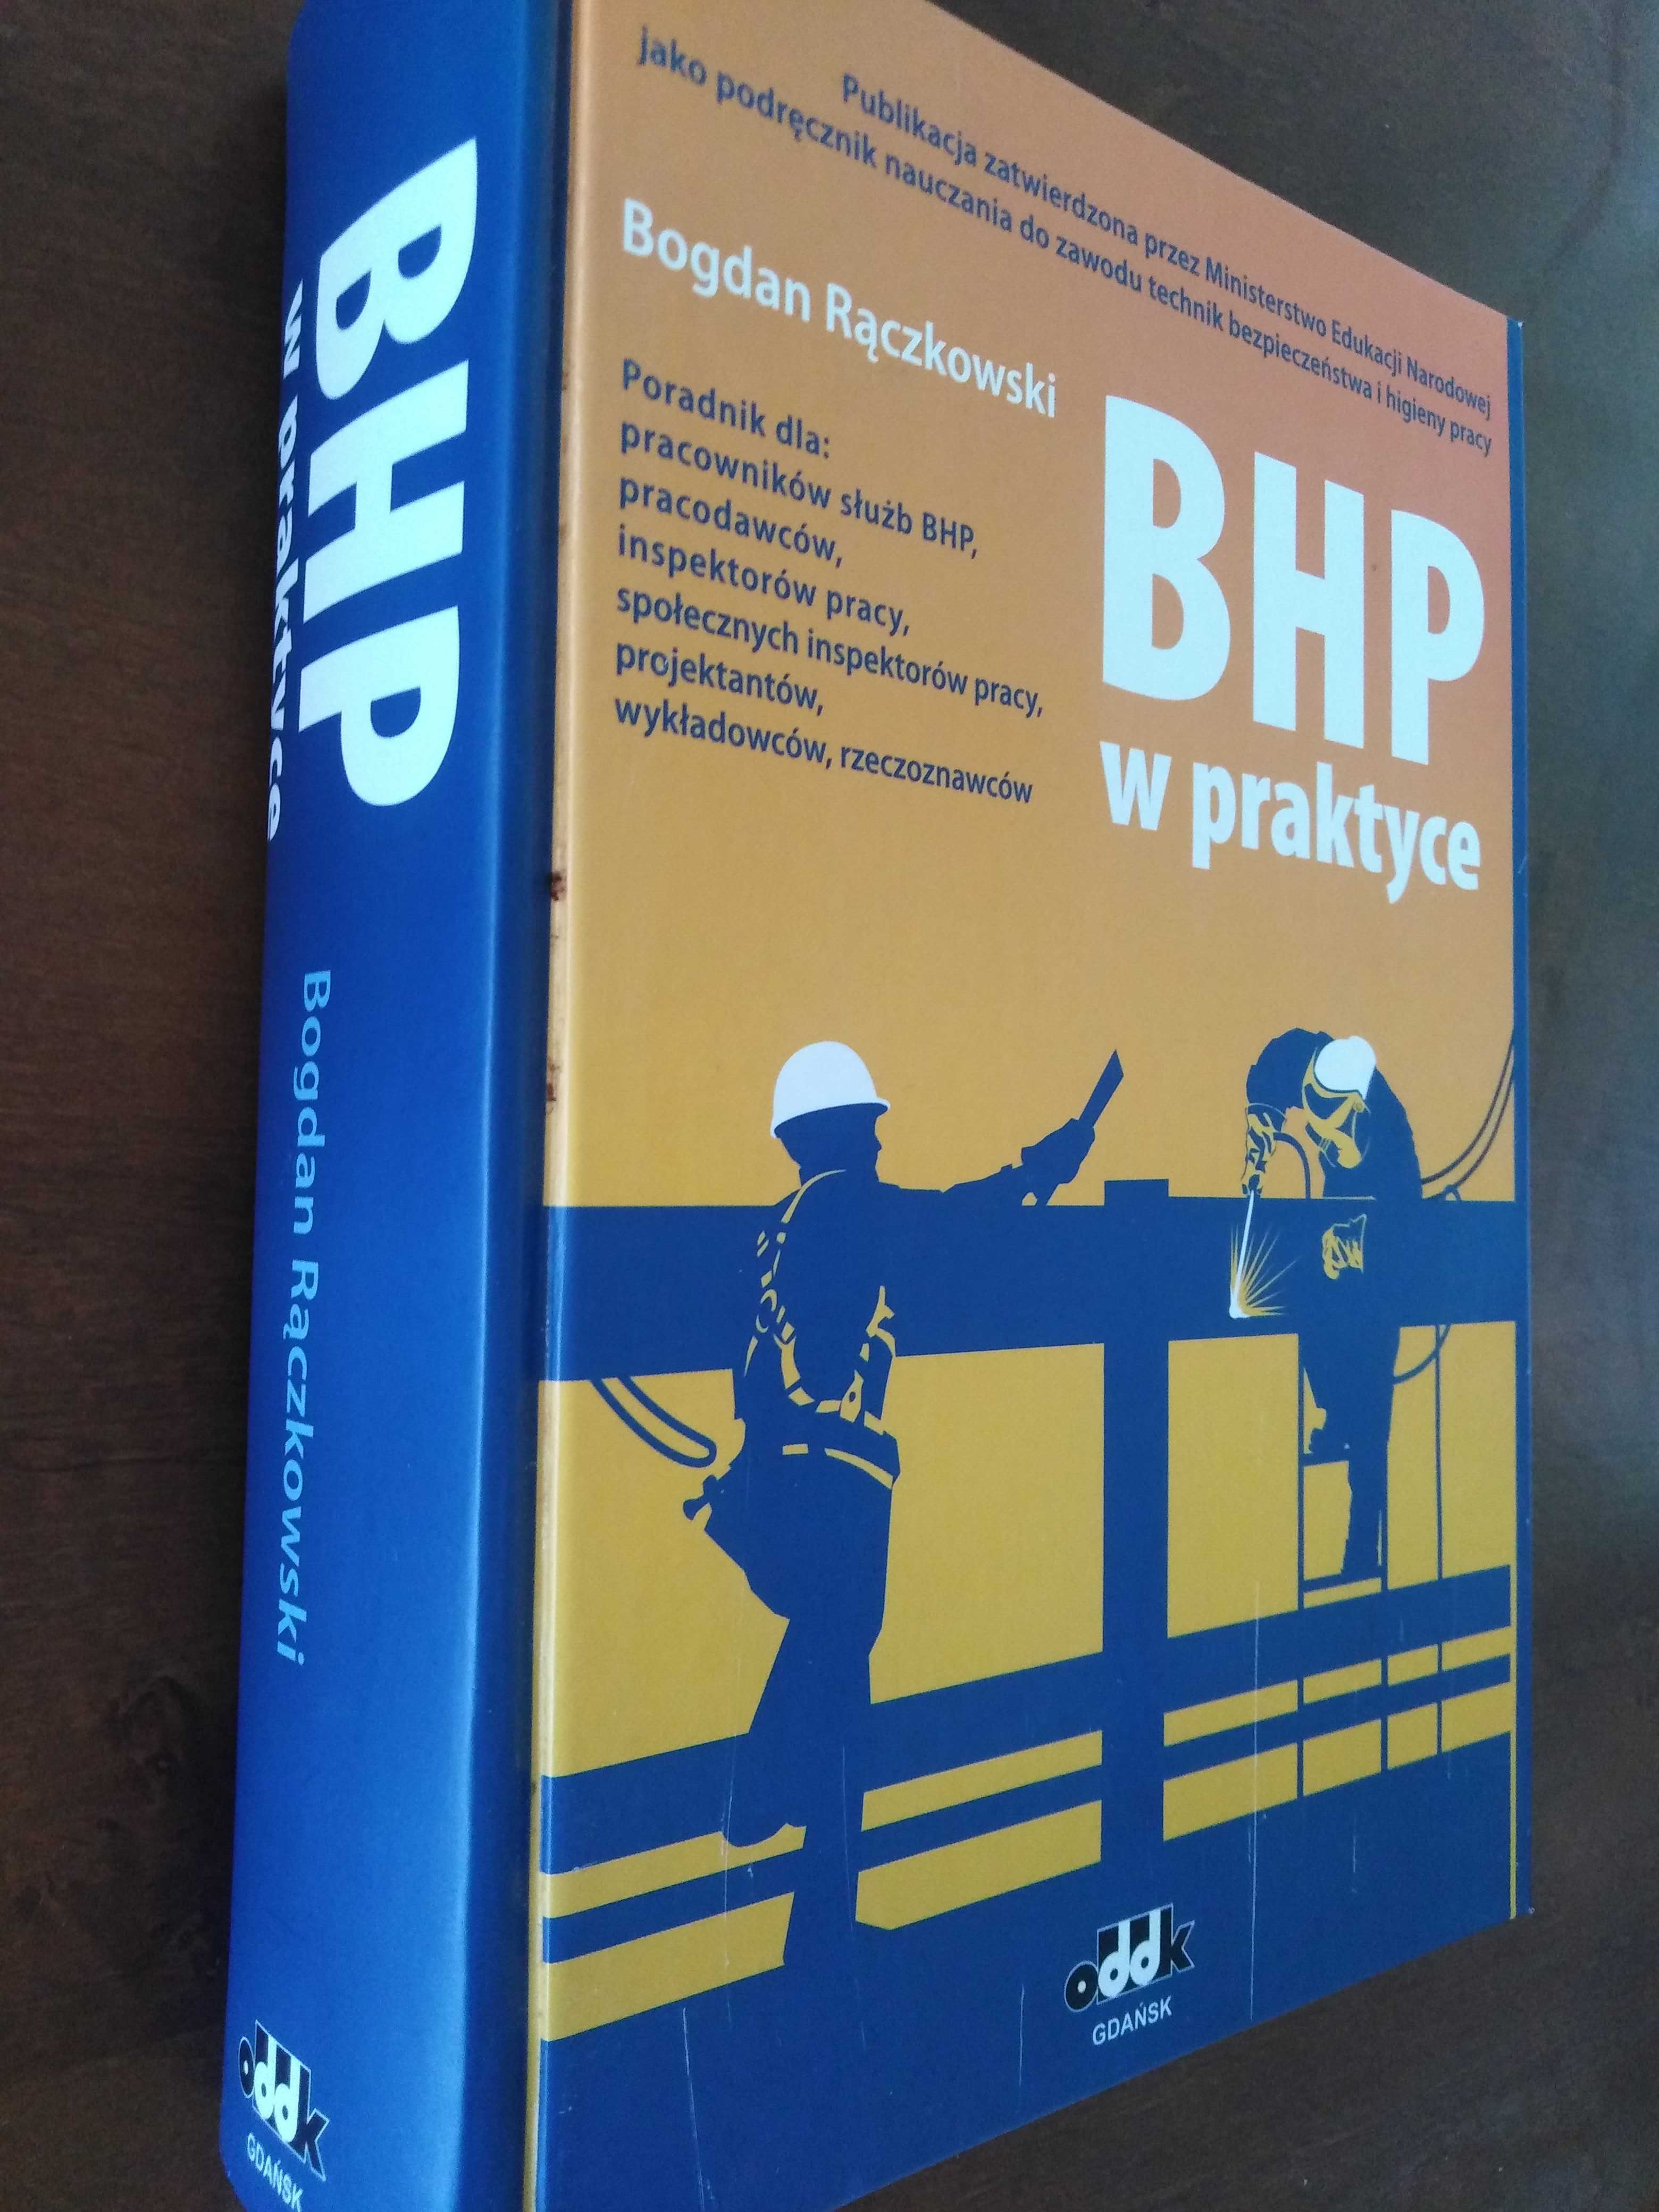 "BHP w praktyce"
Rączkowski Bogdan